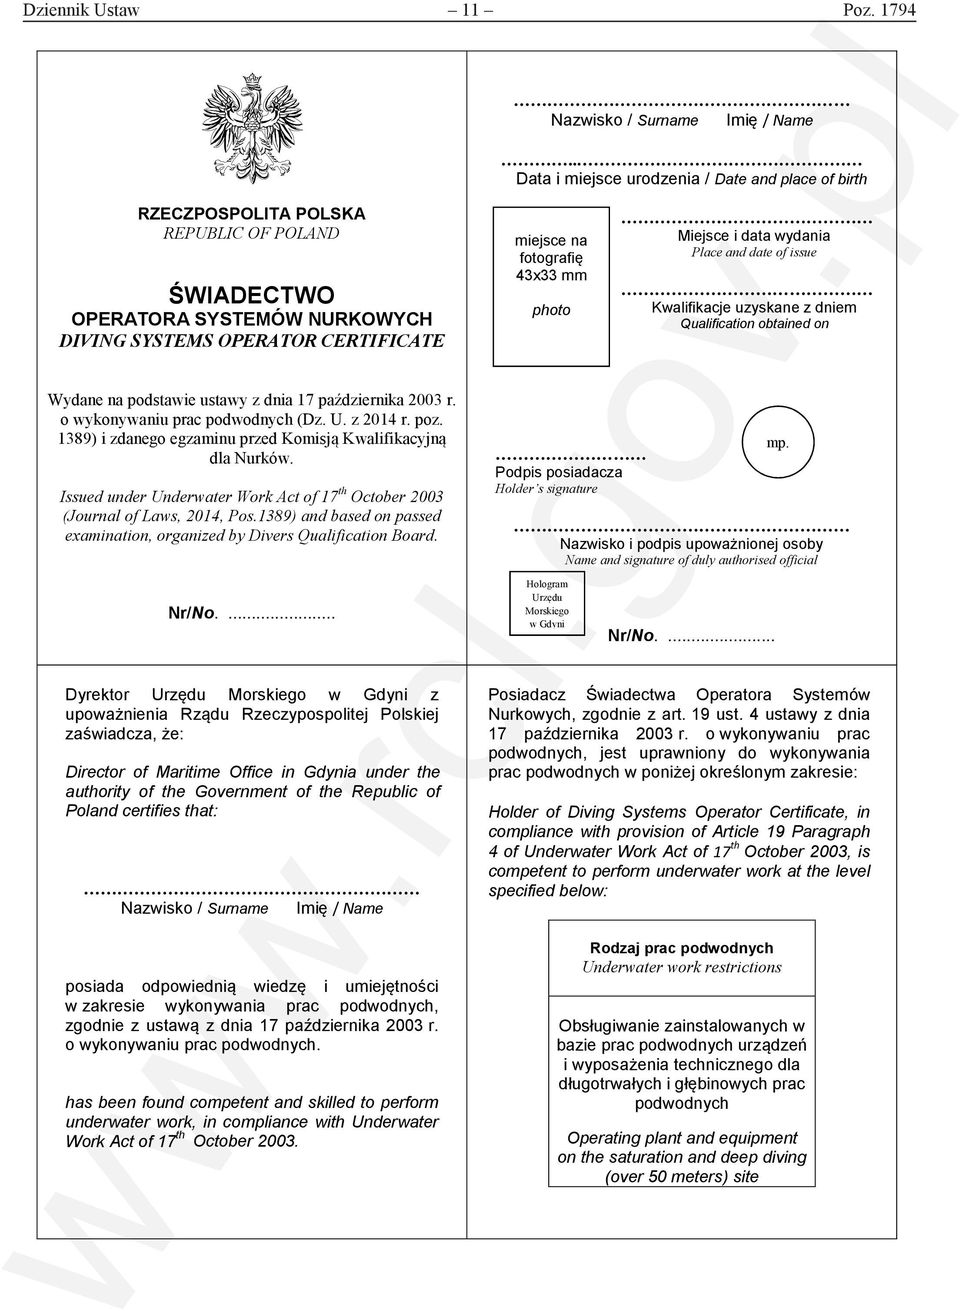 mm photo Miejsce i data wydania Place and date of issue Kwalifikacje uzyskane z dniem Qualification obtained on Wydane na podstawie ustawy z dnia 17 października 2003 r.